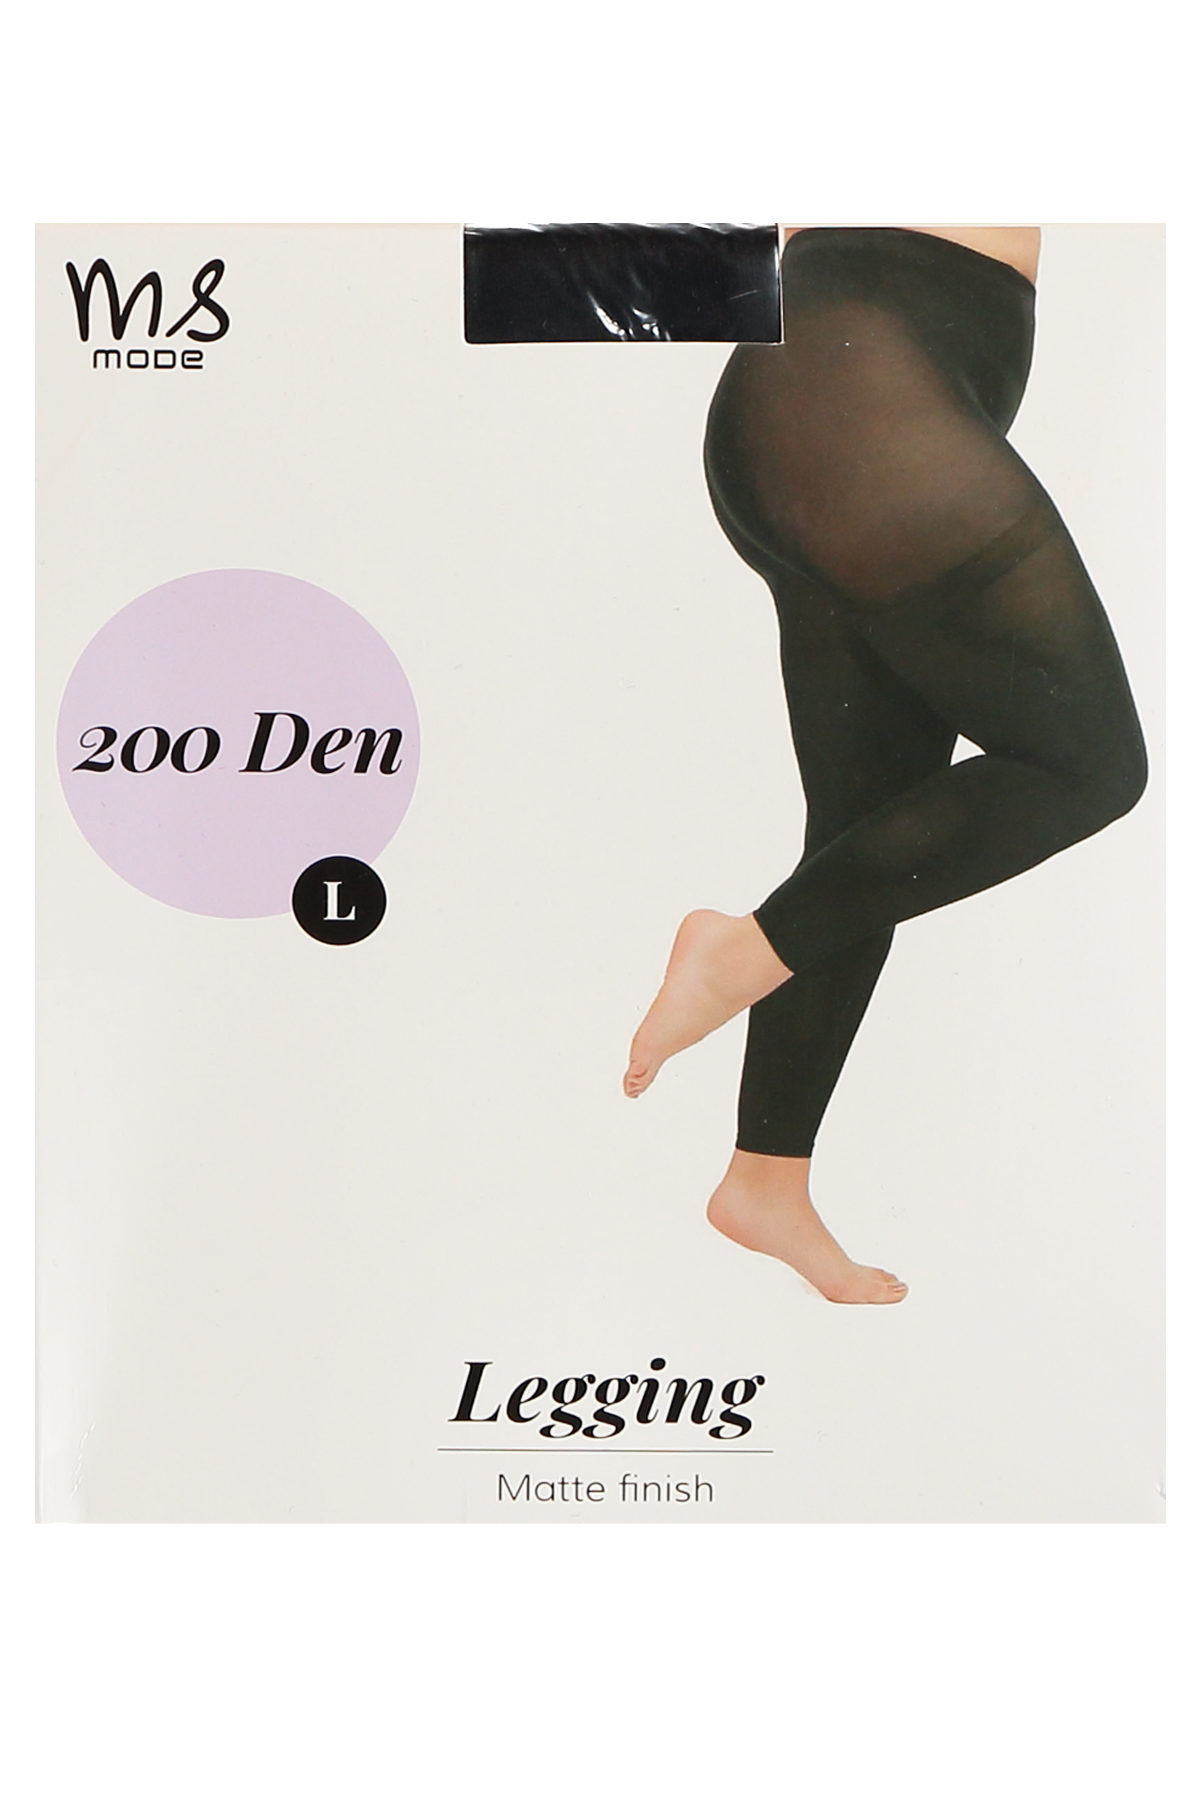 Nahtlose Leggings mit 200 DEN image 0